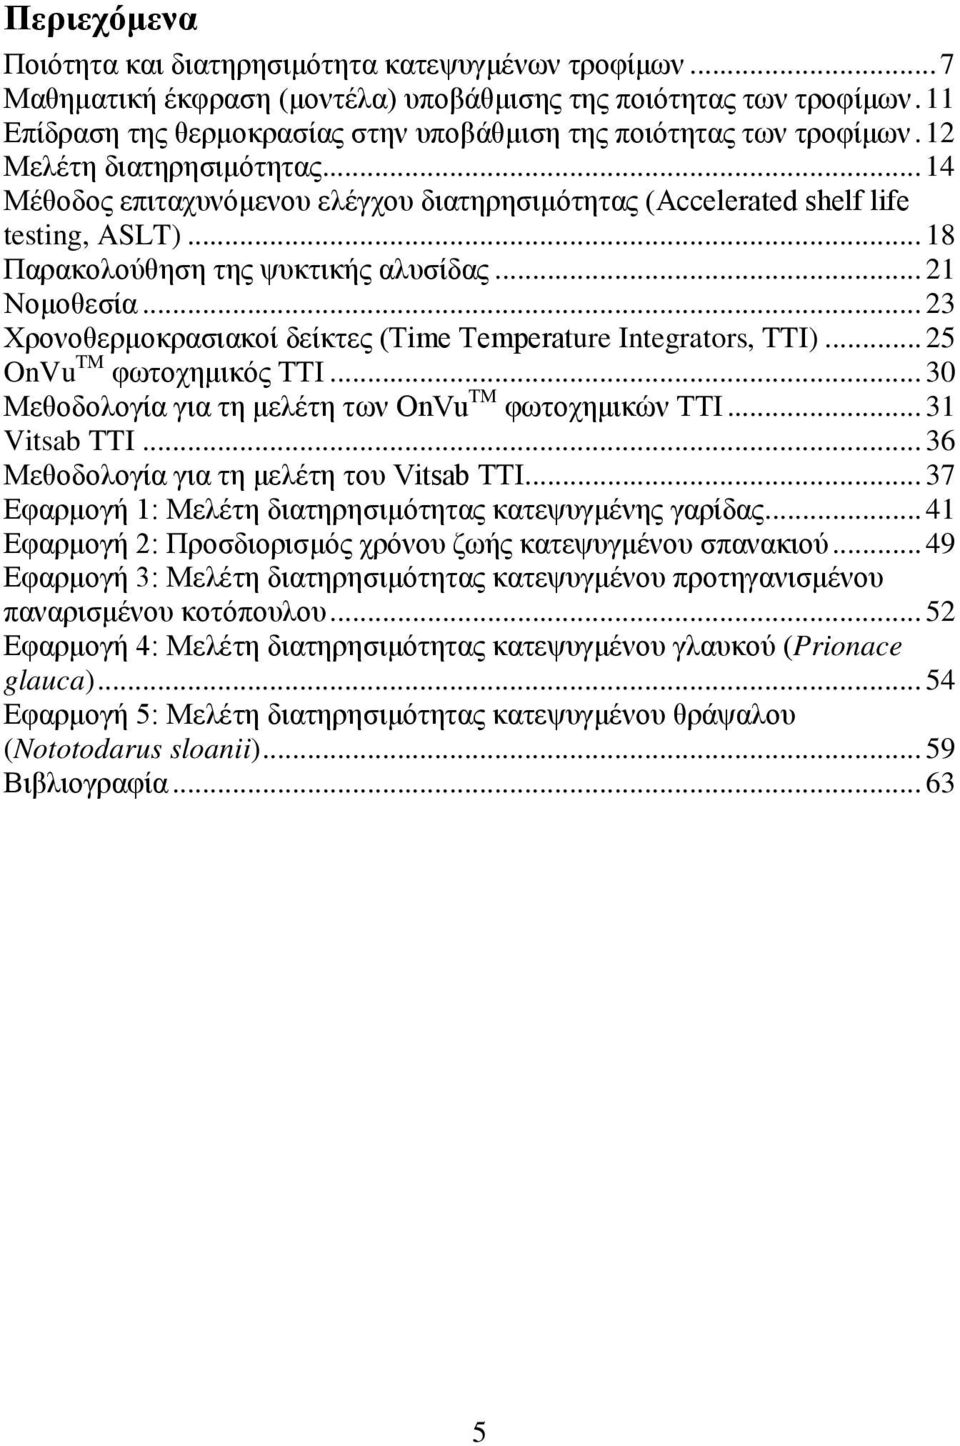 .. 18 Παρακολούθηση της ψυκτικής αλυσίδας... 21 Νομοθεσία... 23 Χρονοθερμοκρασιακοί δείκτες (Time Temperature Integrators, TTI)... 25 OnVu TM φωτοχημικός TTI.